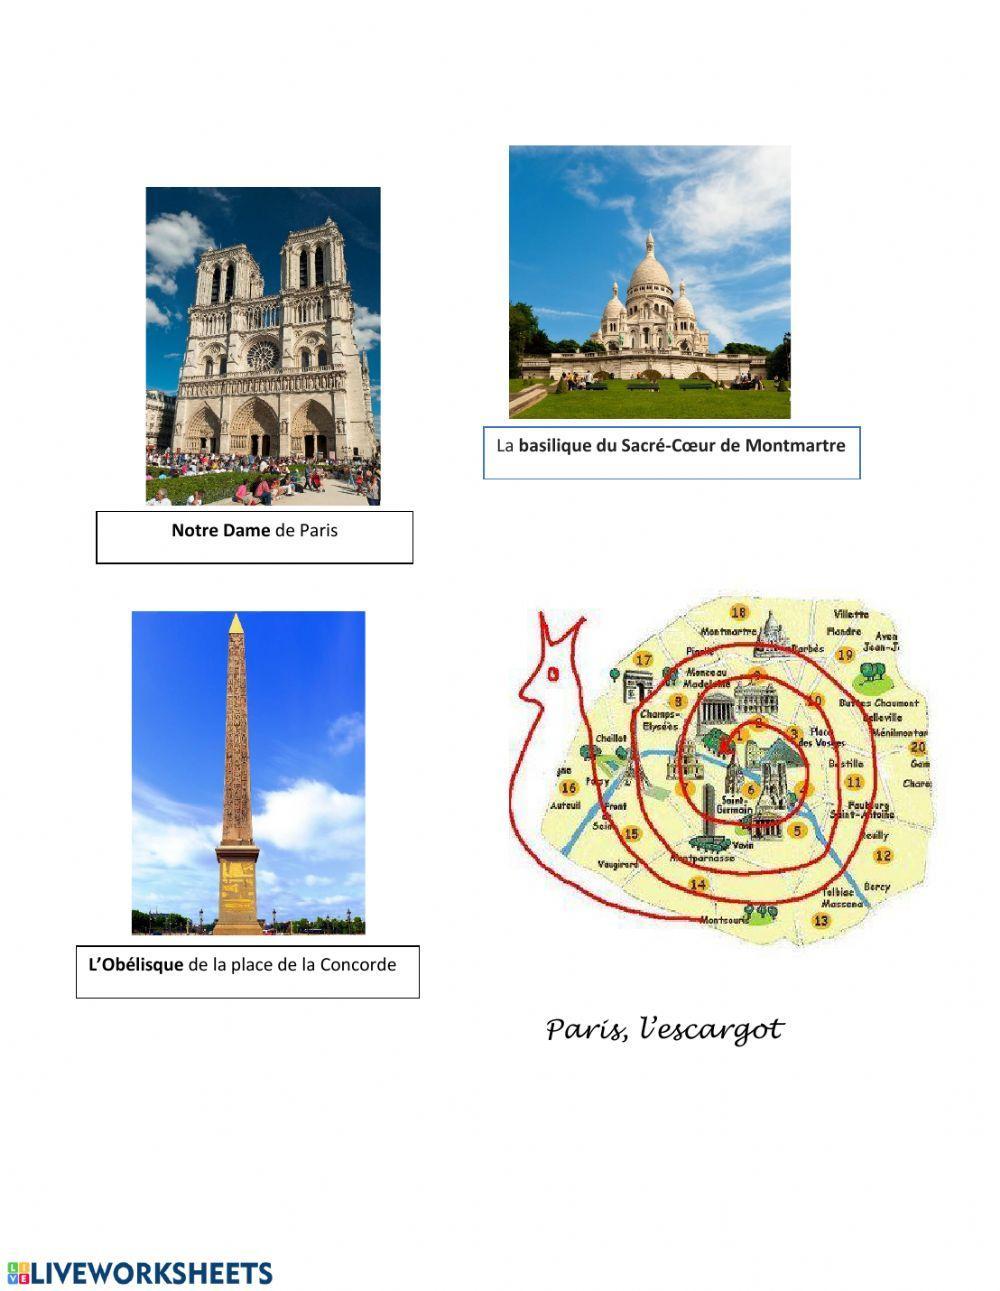 Dans quels arrondissements se trouvent ces monuments de Paris?